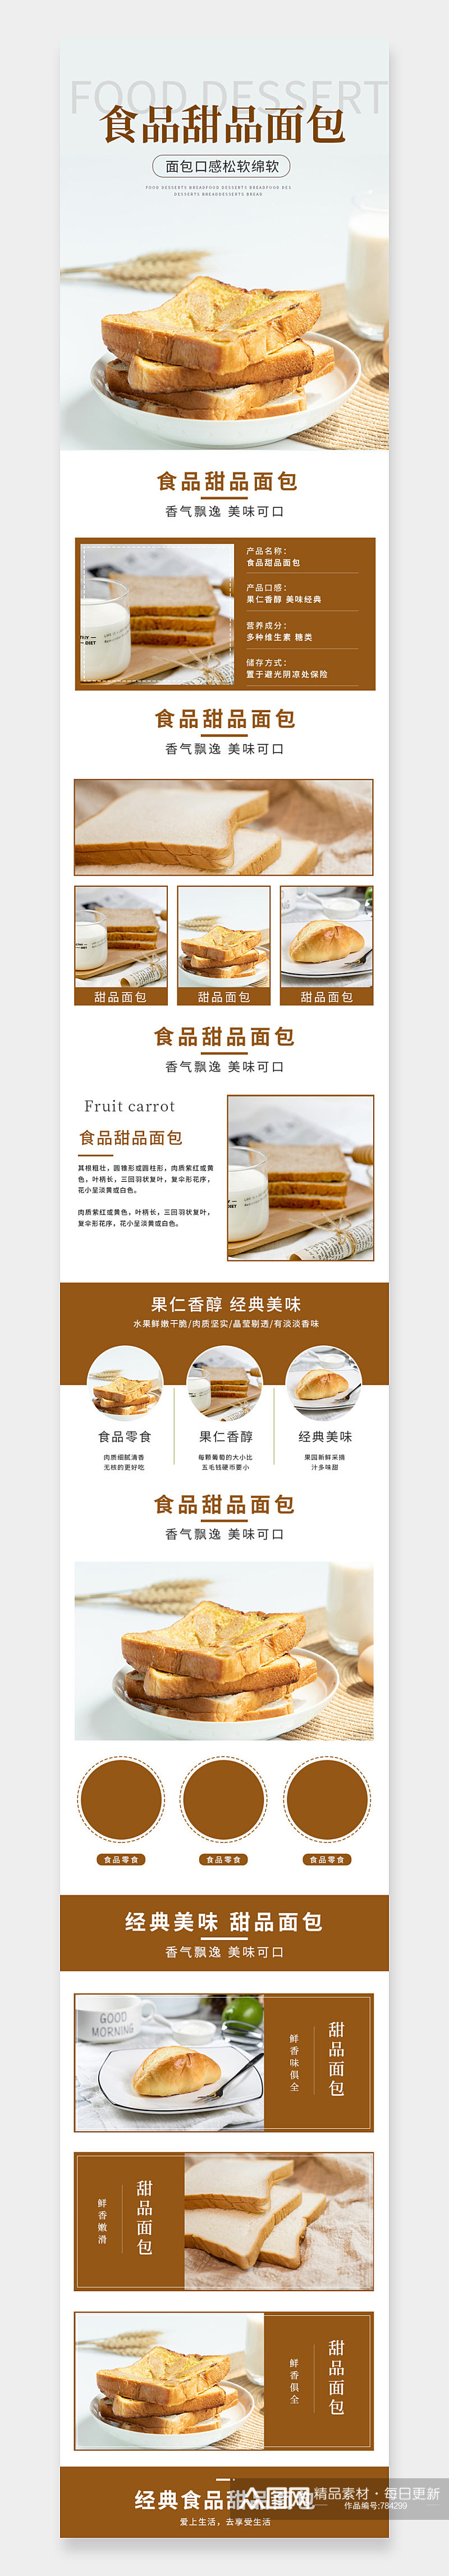 简约风食品甜品面包详情页素材